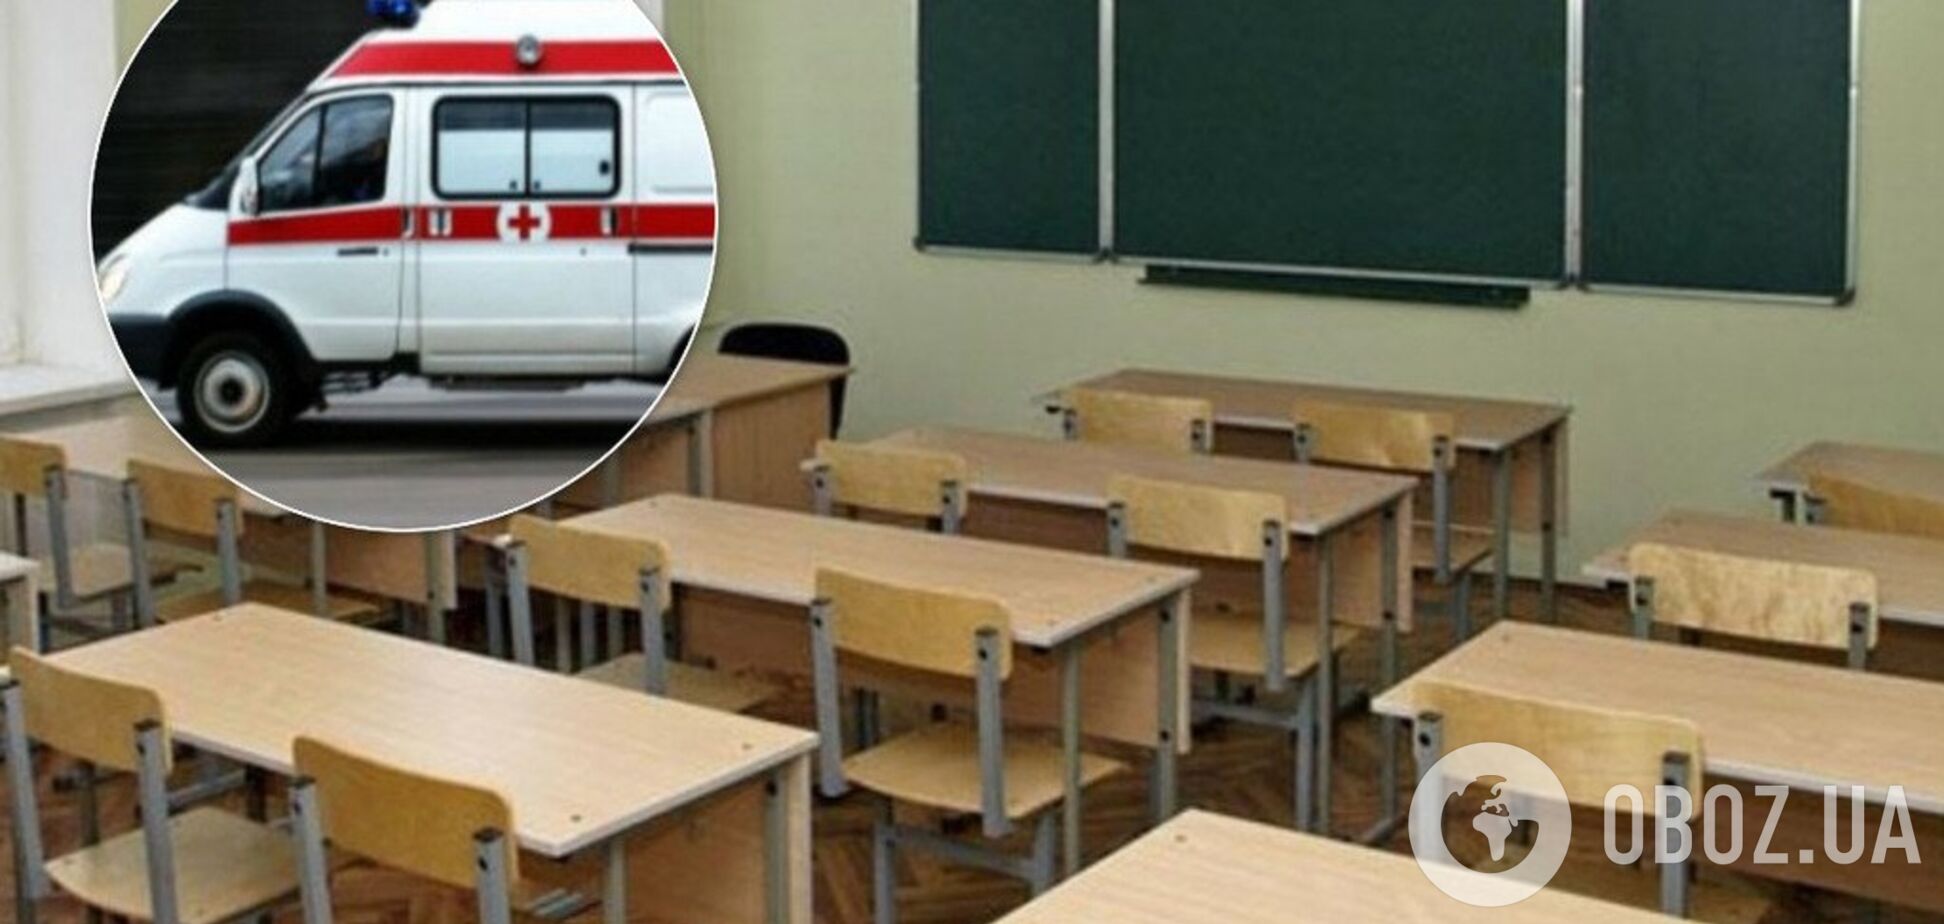 На Полтавщине во время перемены в школе умерла девочка